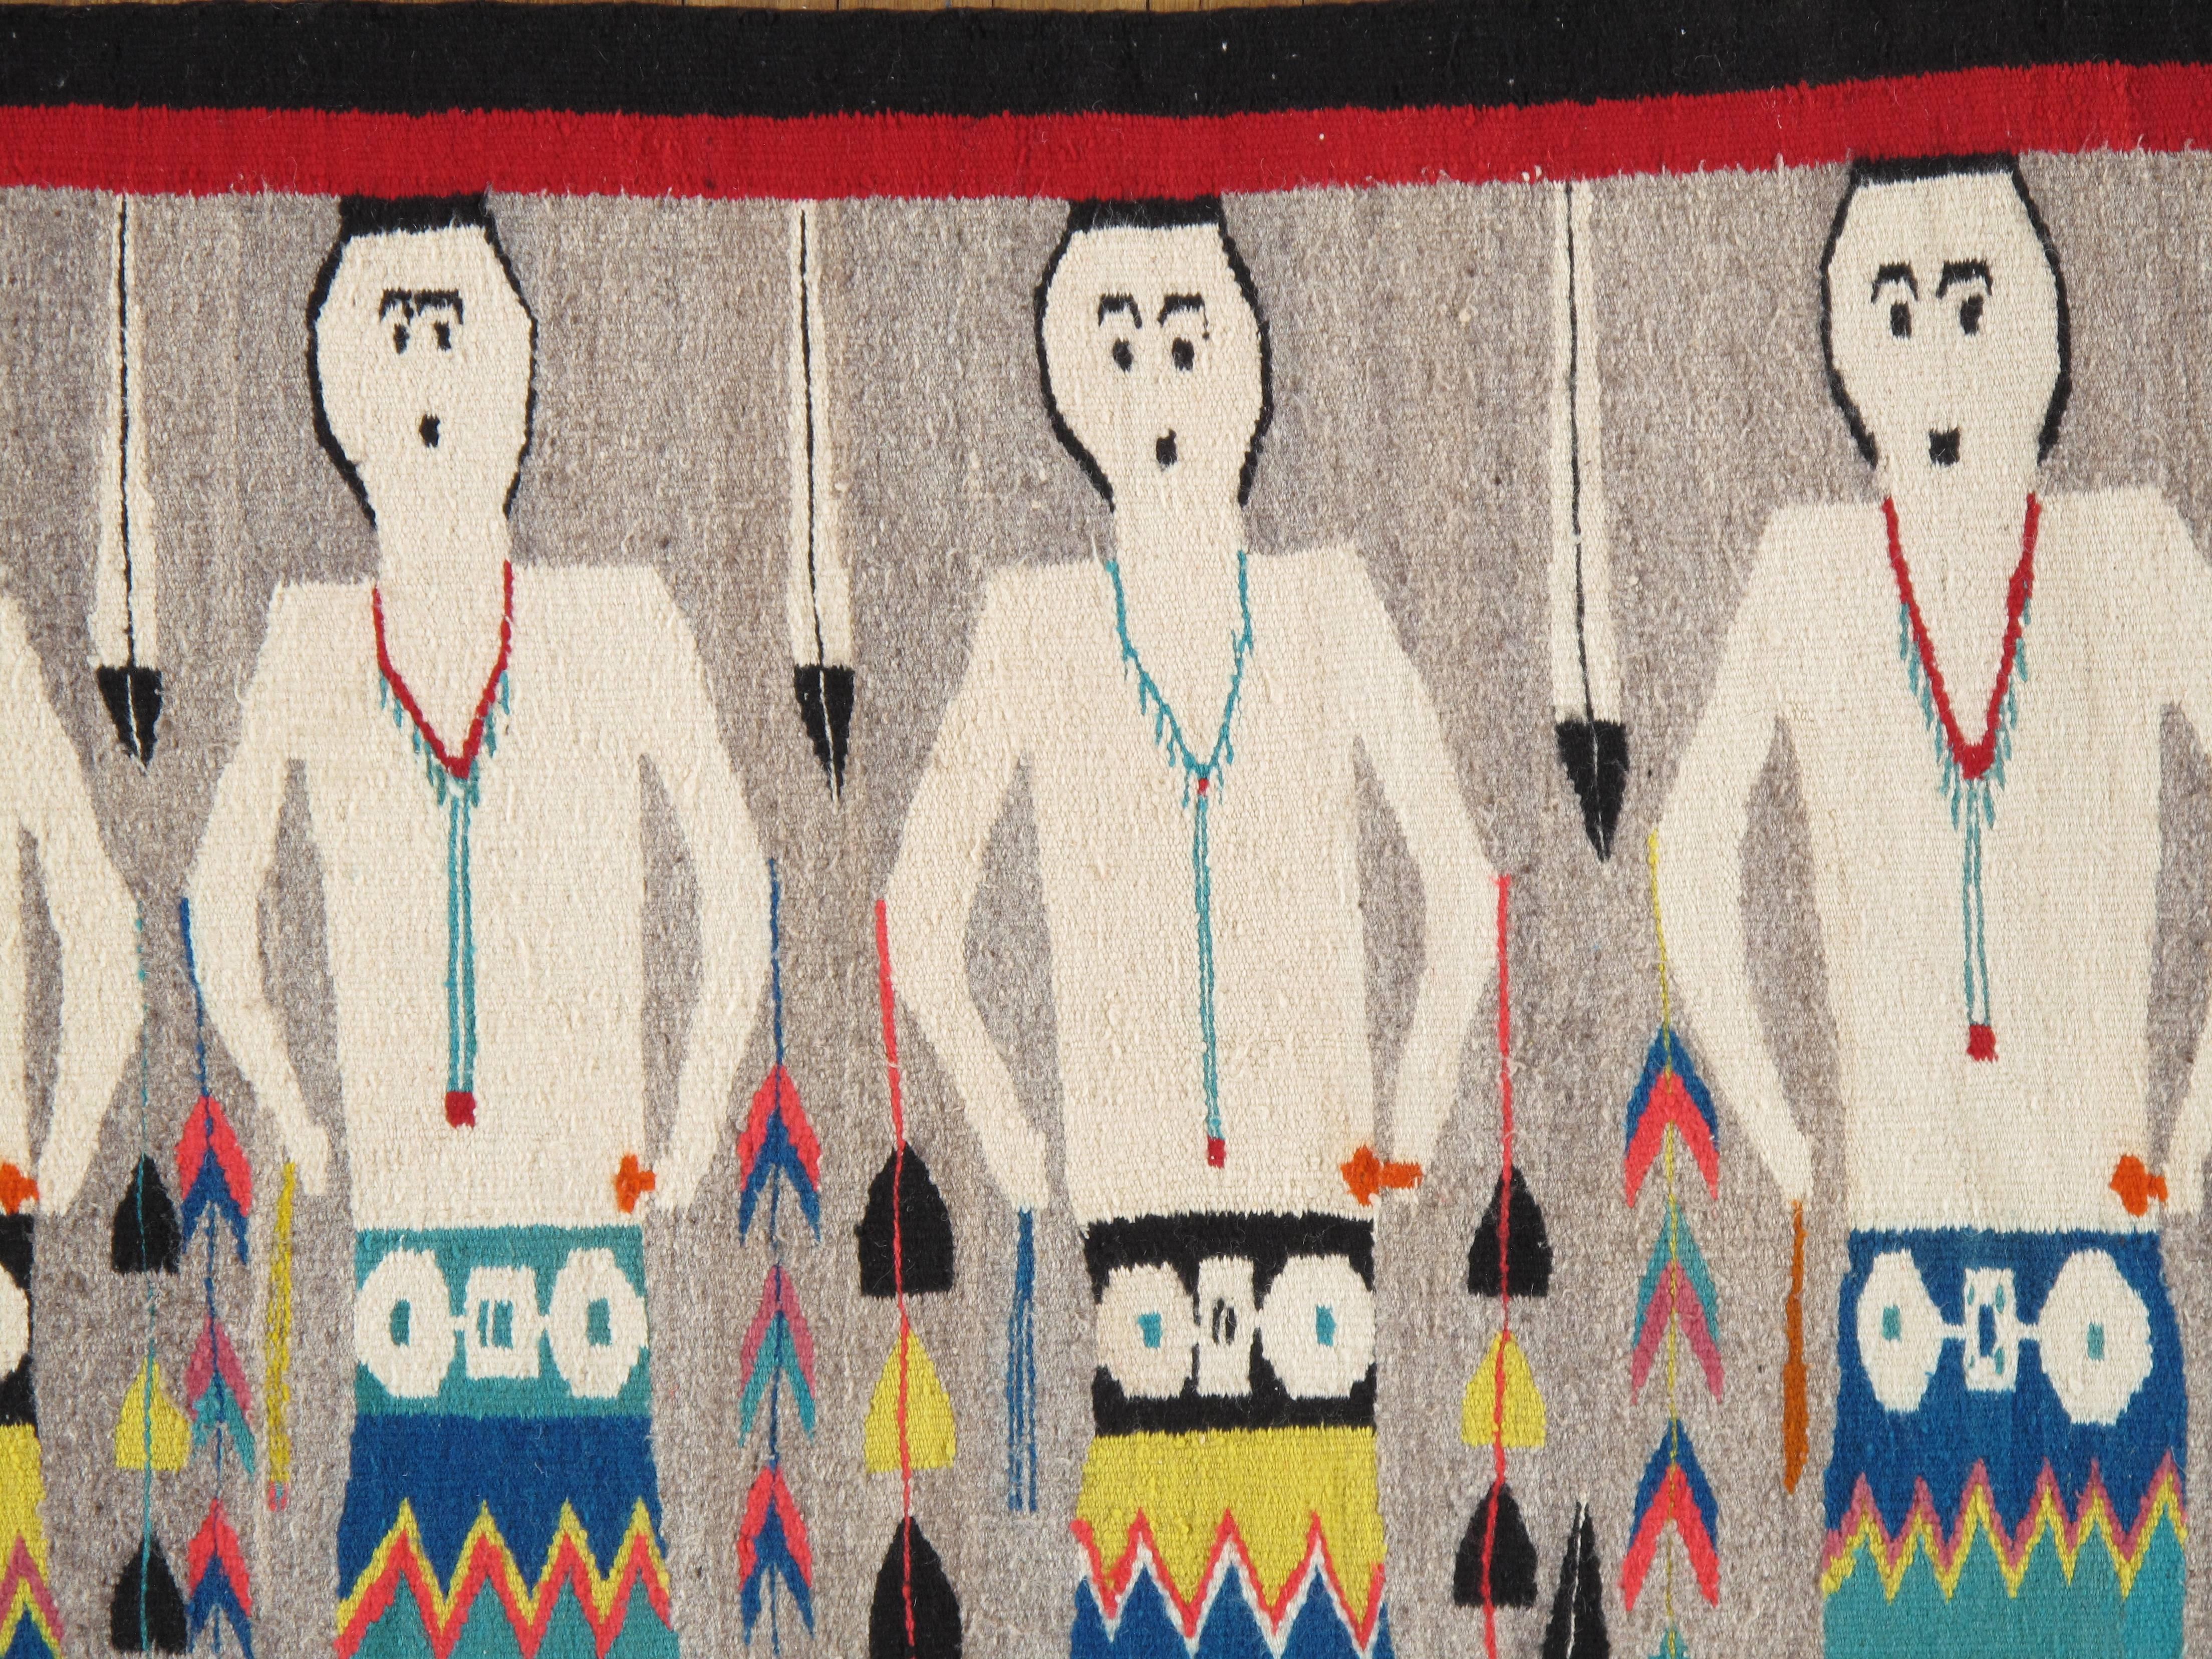 Les tapis et couvertures Navajo sont des textiles produits par le peuple Navajo de la région des Four Corners aux États-Unis. Les textiles Navajo sont très appréciés et sont recherchés comme articles de commerce depuis plus de 150 ans. Ces tapis et